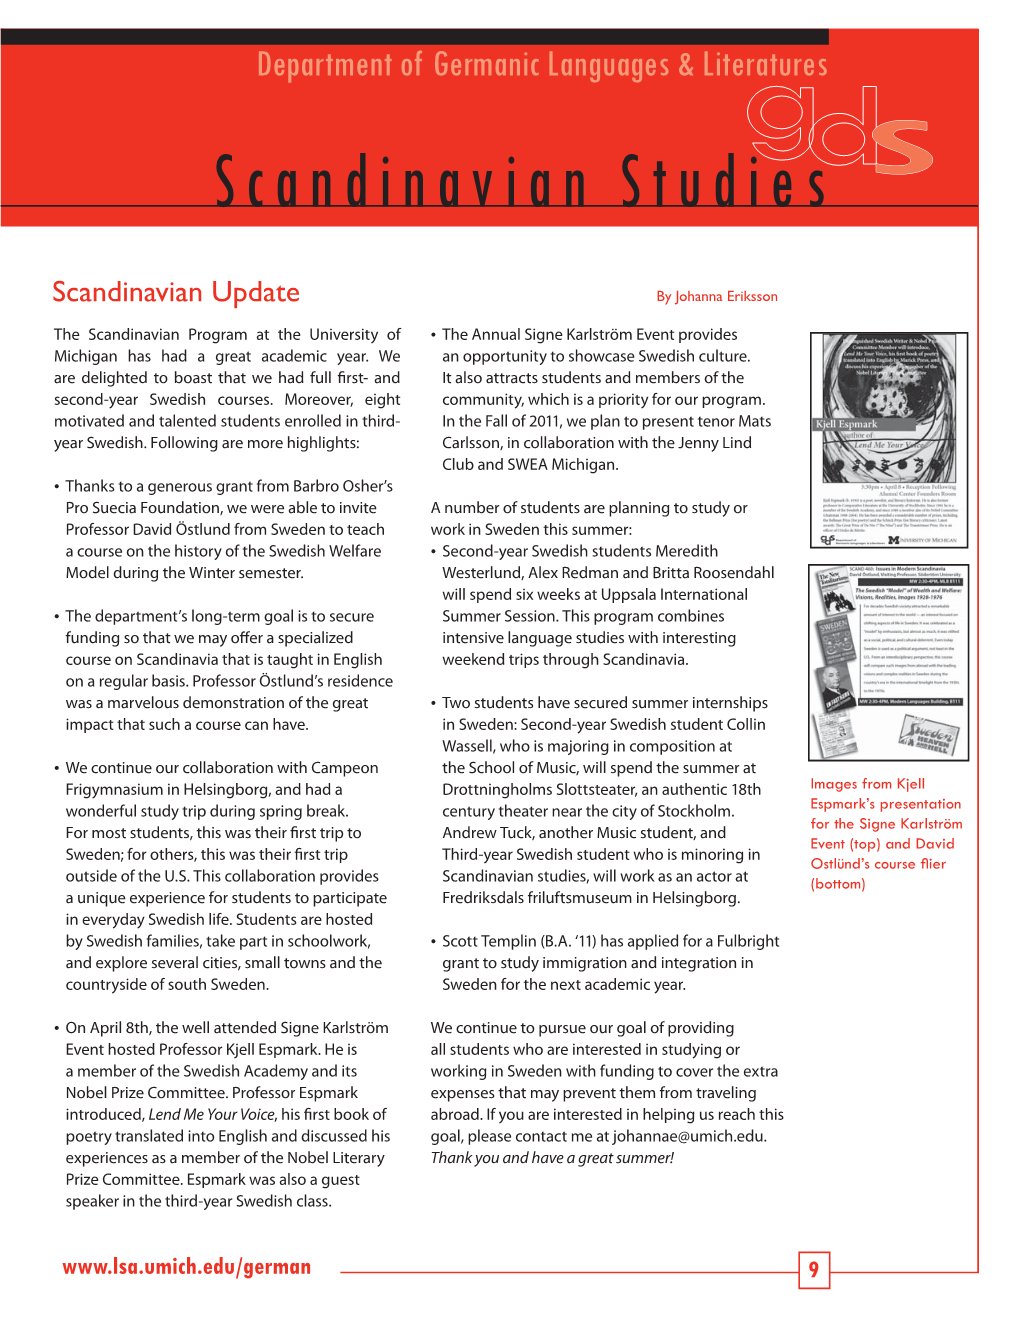 Scandinavian Studiesds